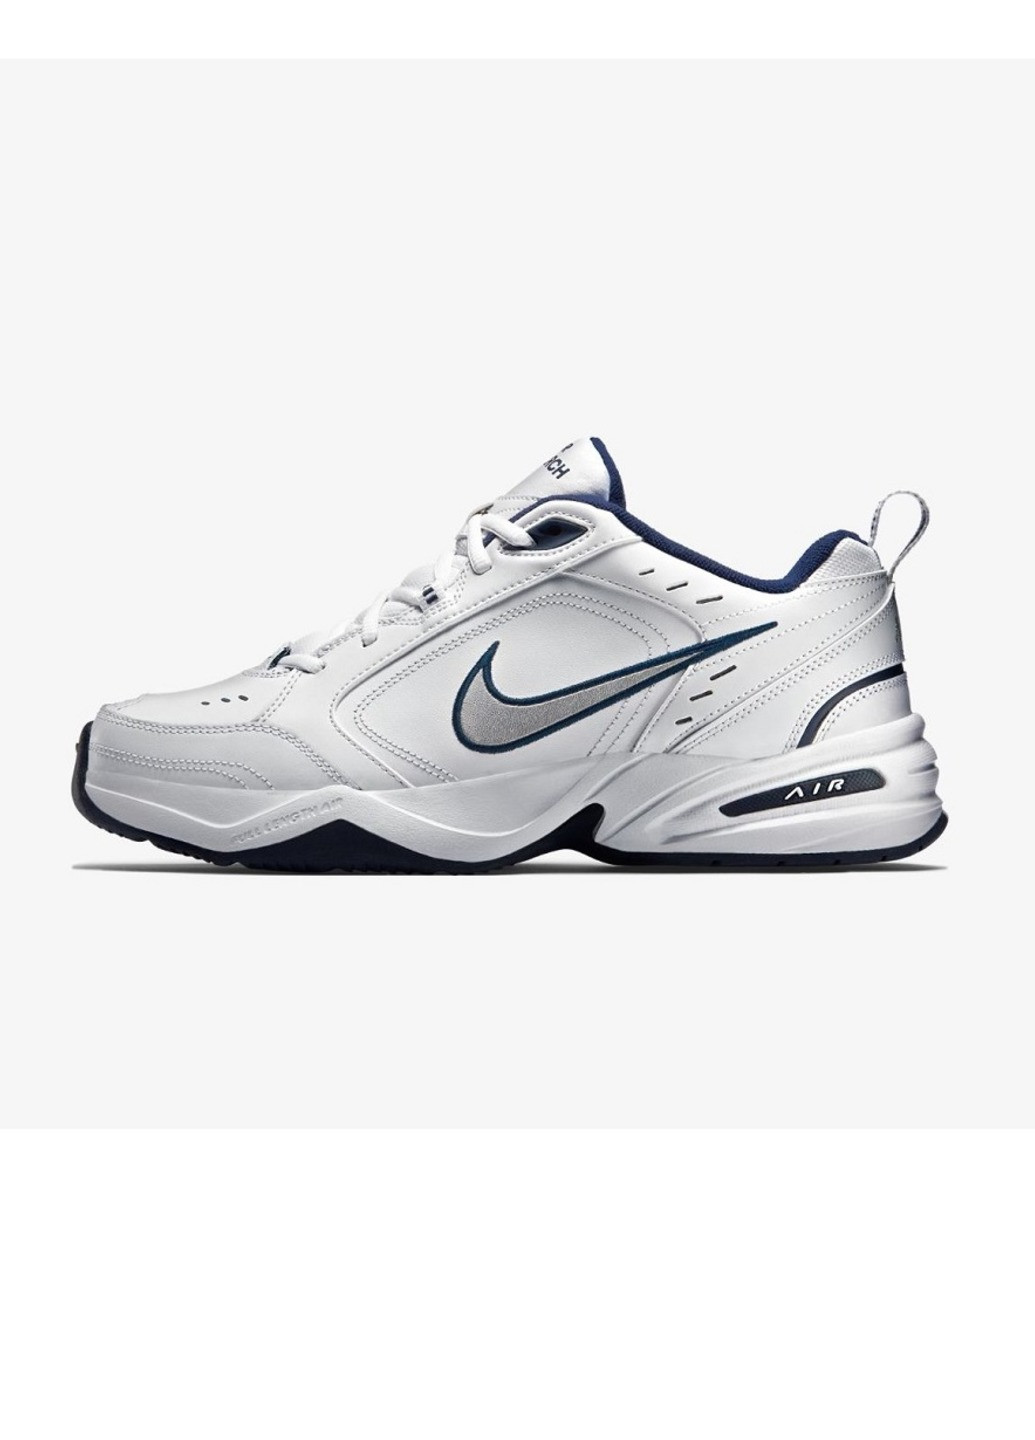 Белые демисезонные кроссовки Nike Air Monarch